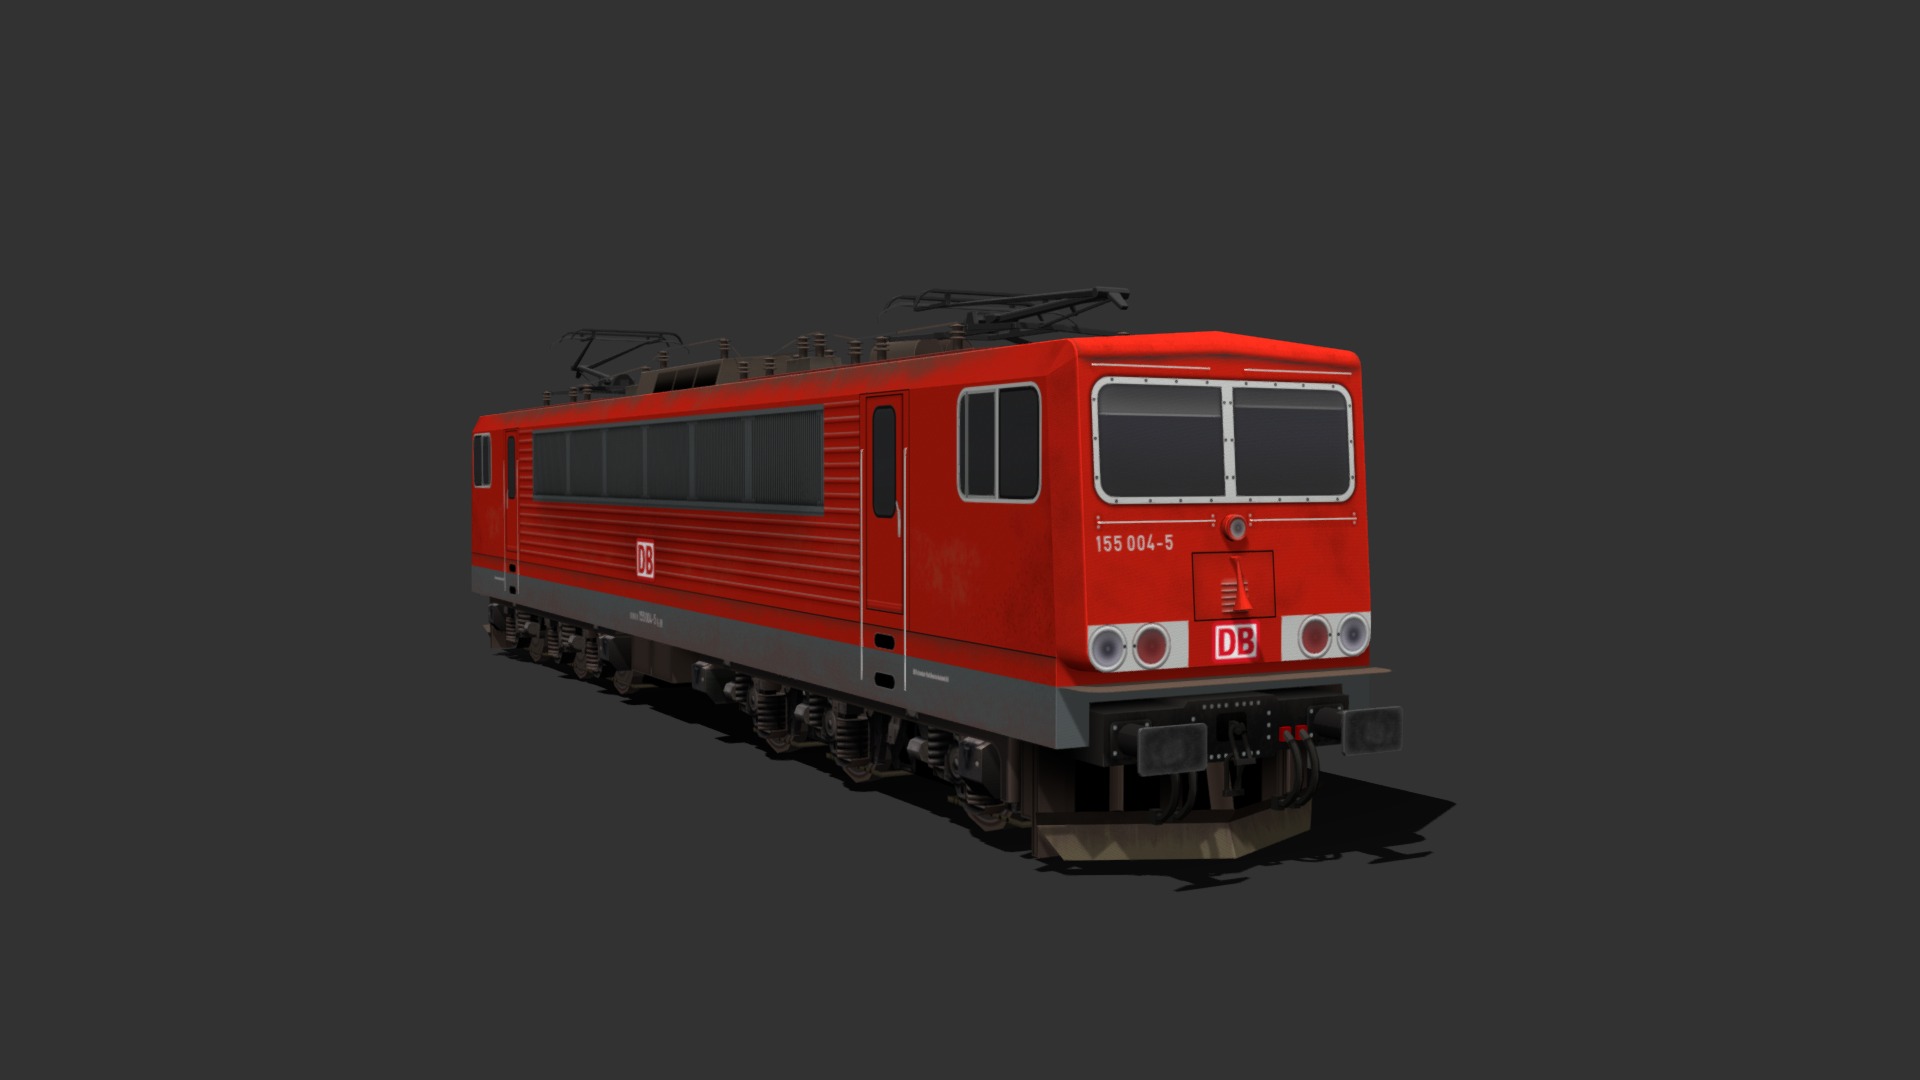 3D model Baureihe 155 – Deutsche Bahn - This is a 3D model of the Baureihe 155 - Deutsche Bahn. The 3D model is about a red and white train.